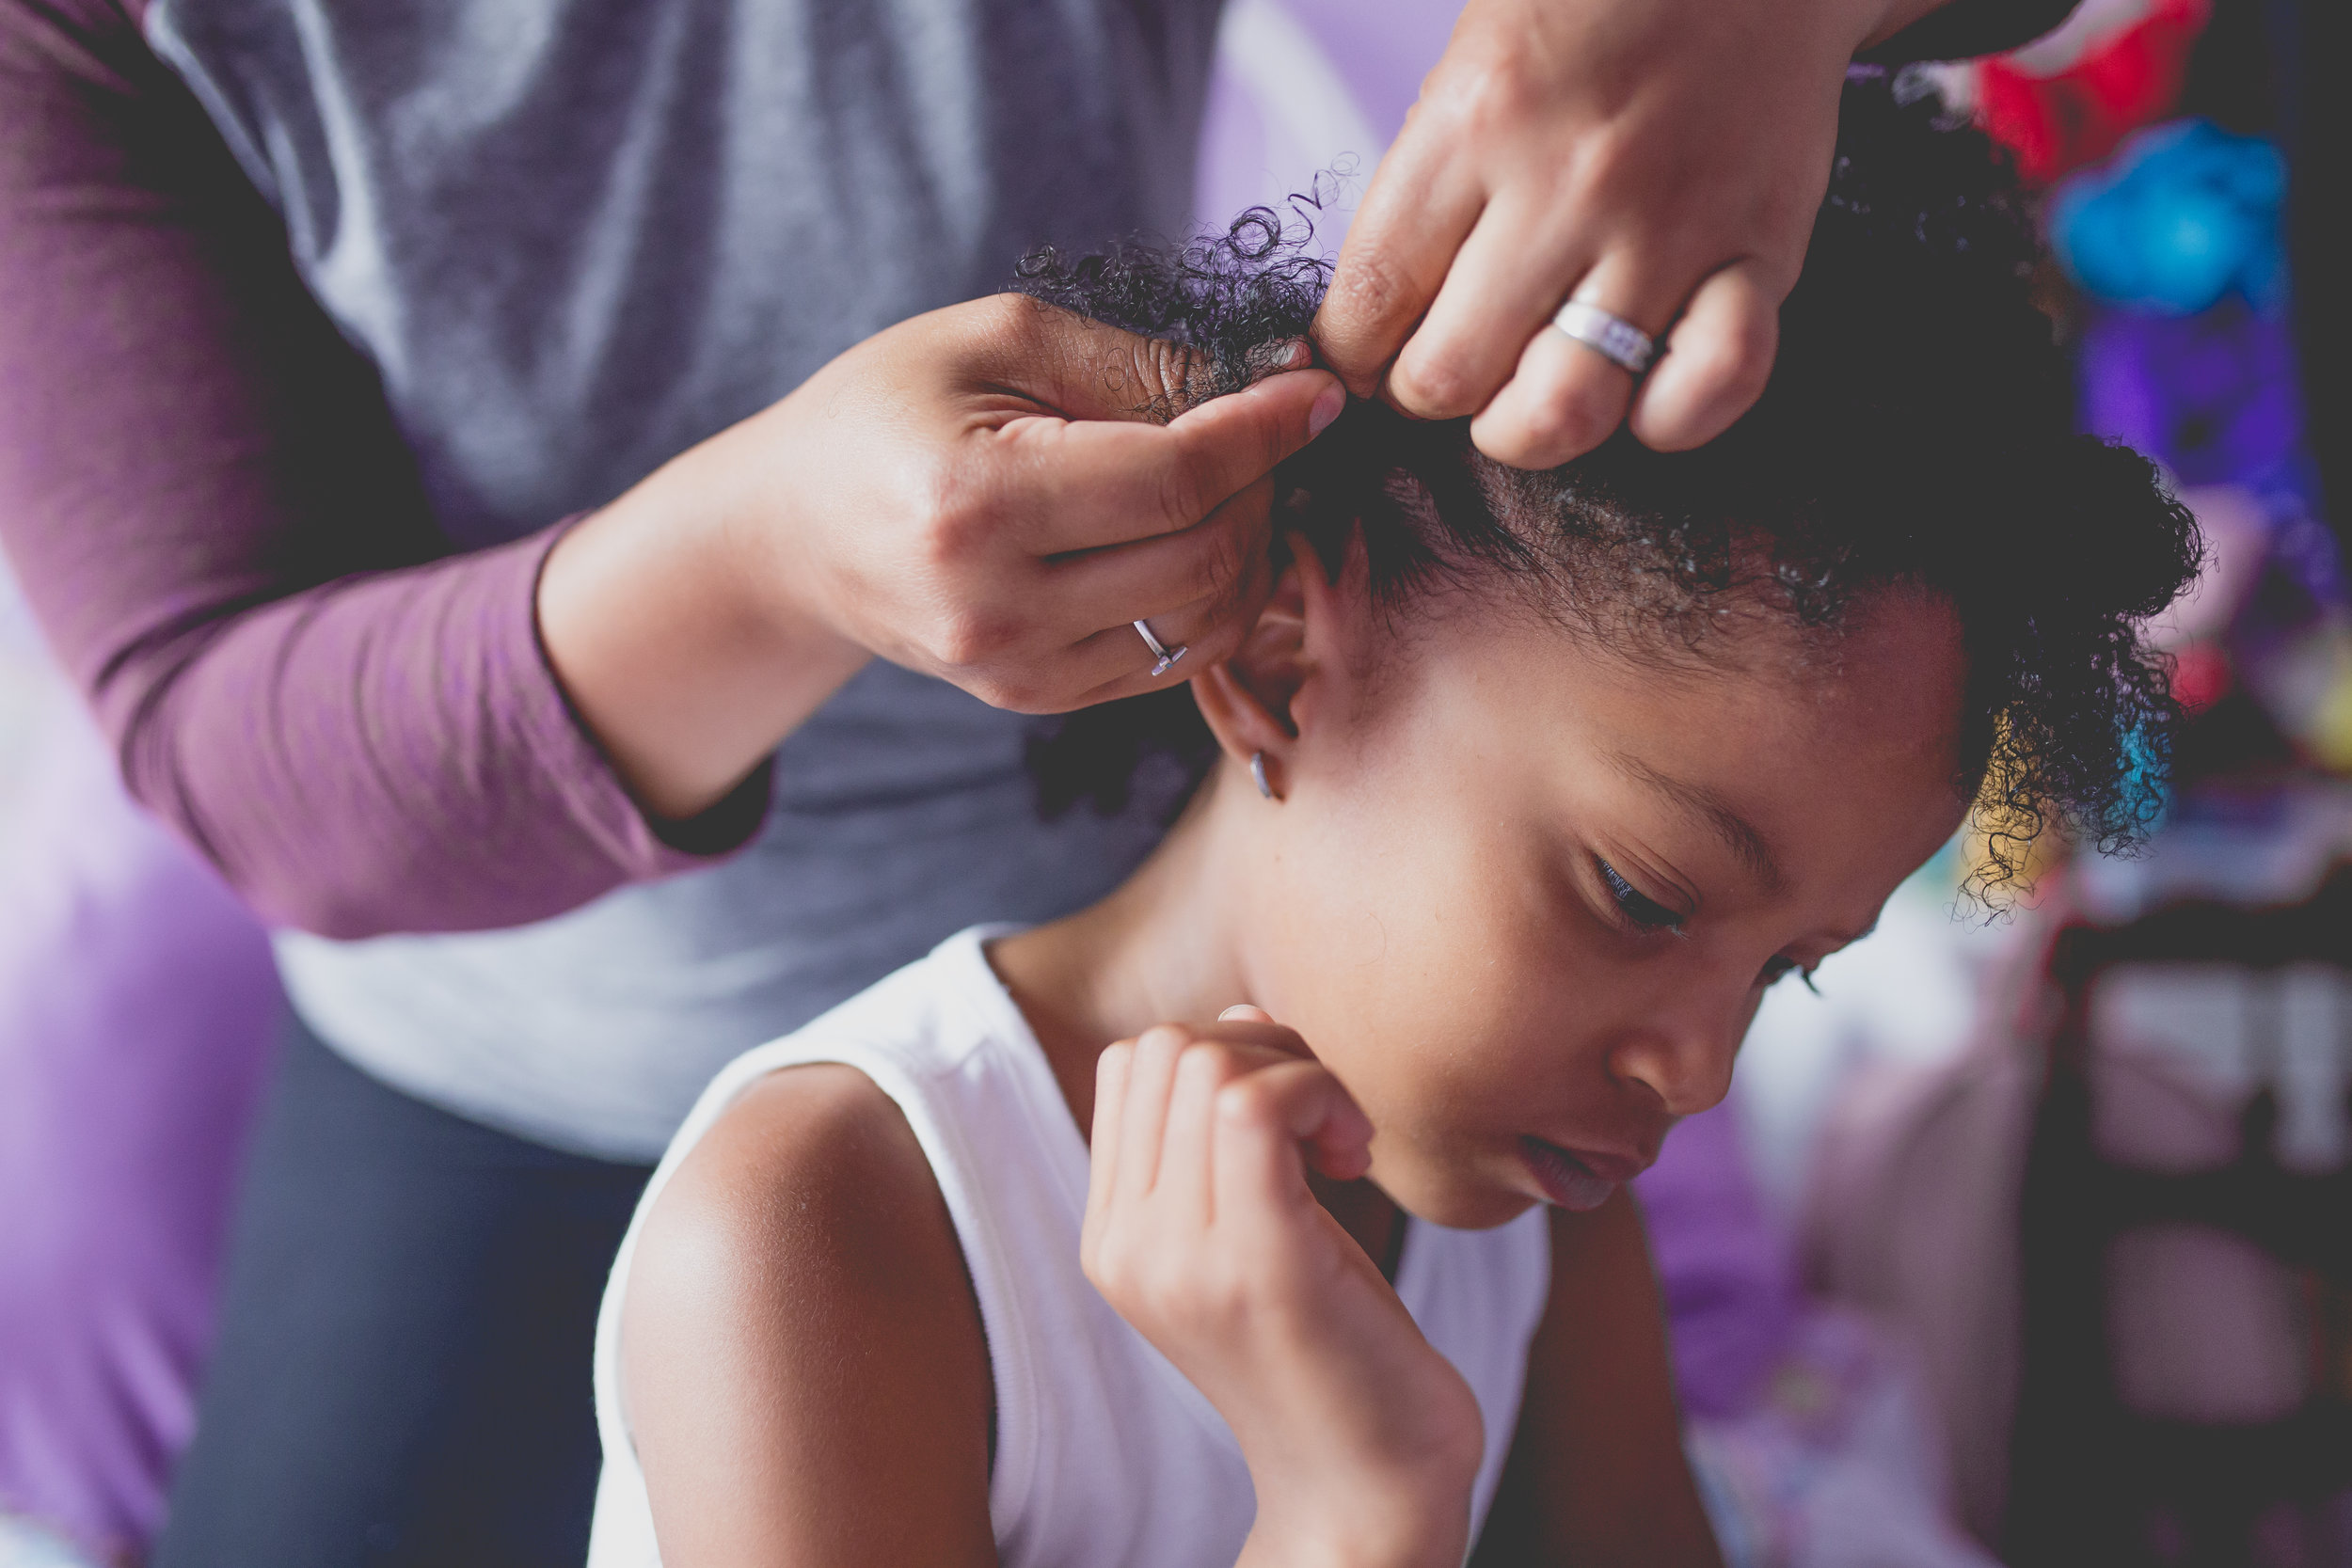 Mom puts cornrow in daughter's hair